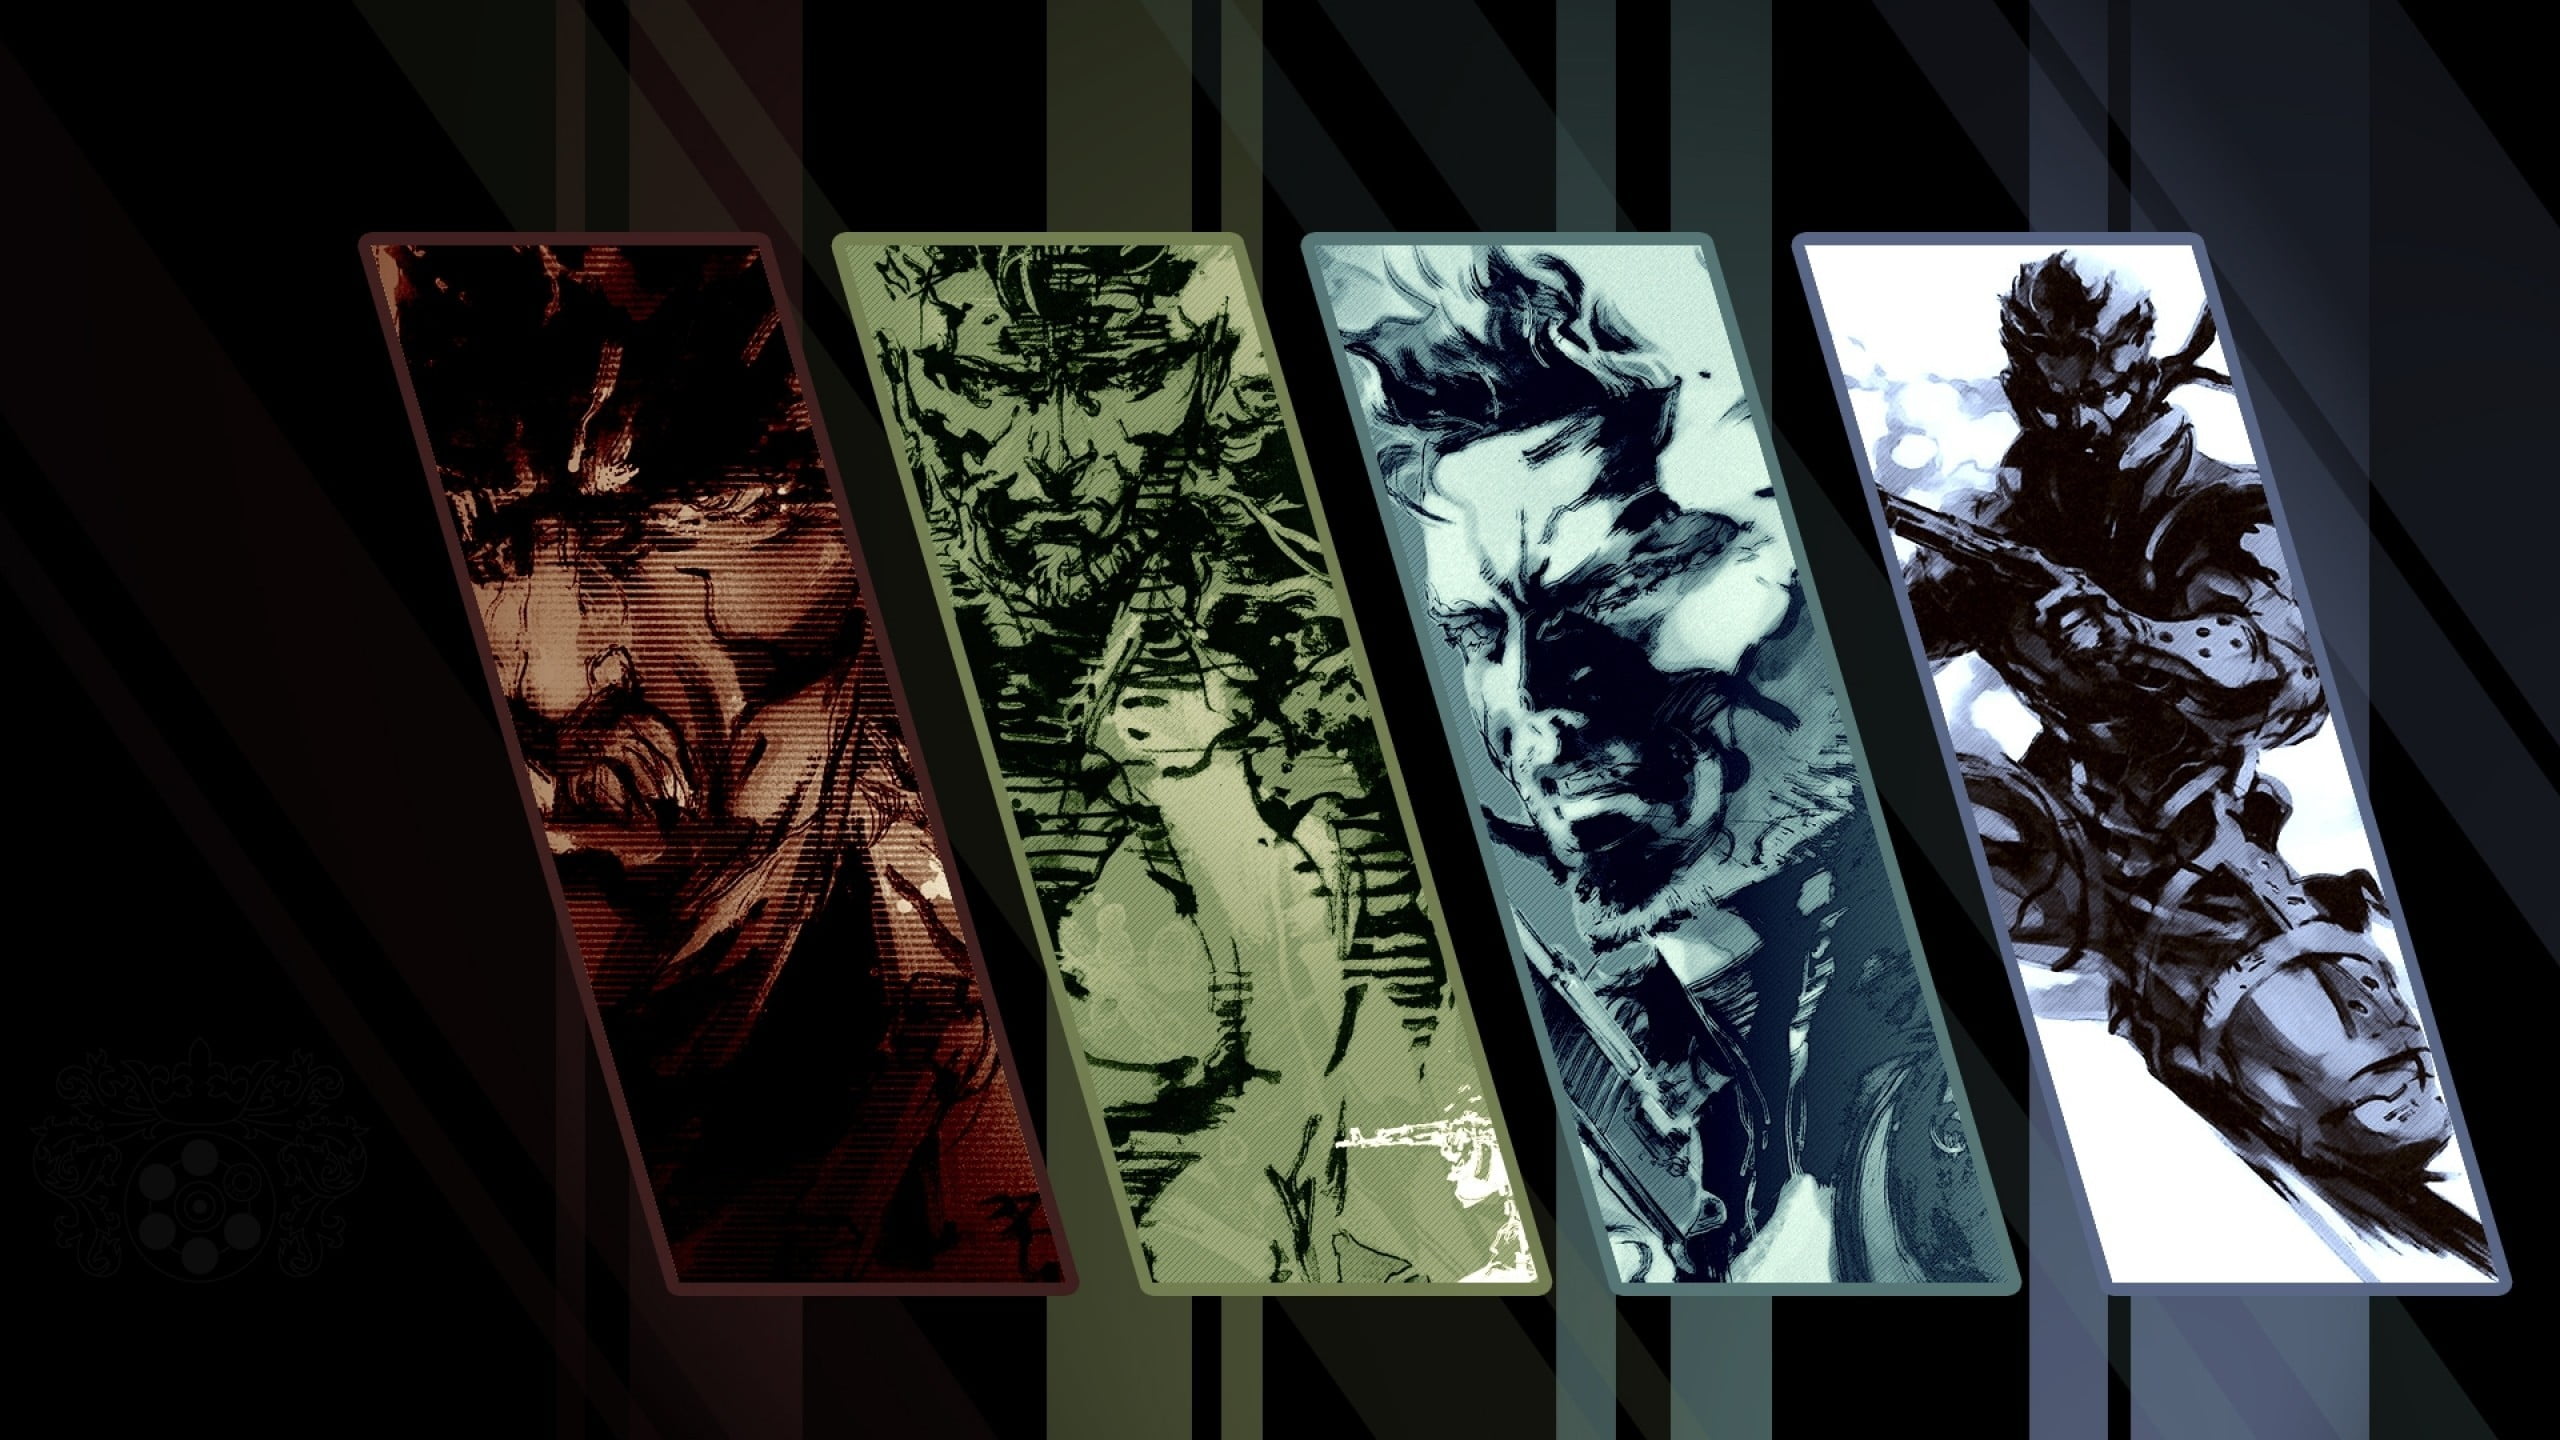 Metal Gear digital wallpaper, Metal Gear Solid 3: Snake Eater, Metal Gear Solid , collage, video games